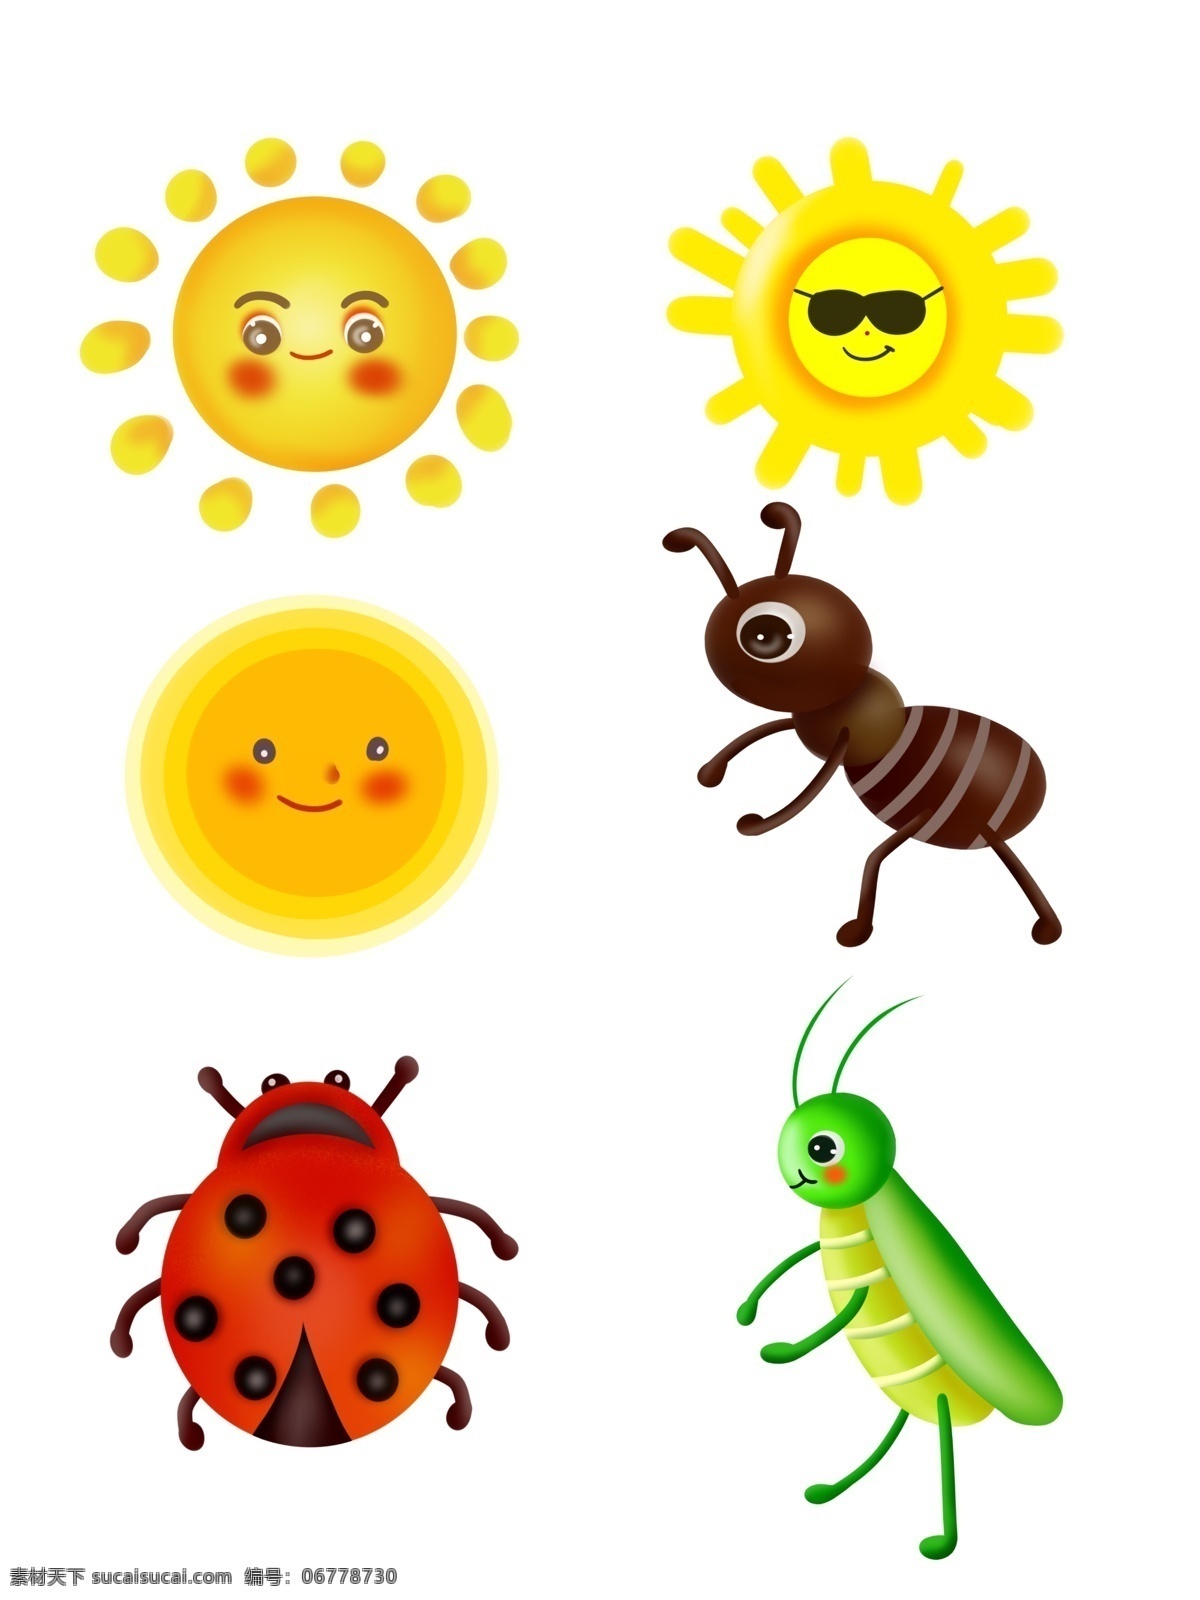 太阳昆虫 儿童素材 卡通素材 幼儿园素材 素材元素 手绘素材 校园素材 小孩素材 玩具素材 元素